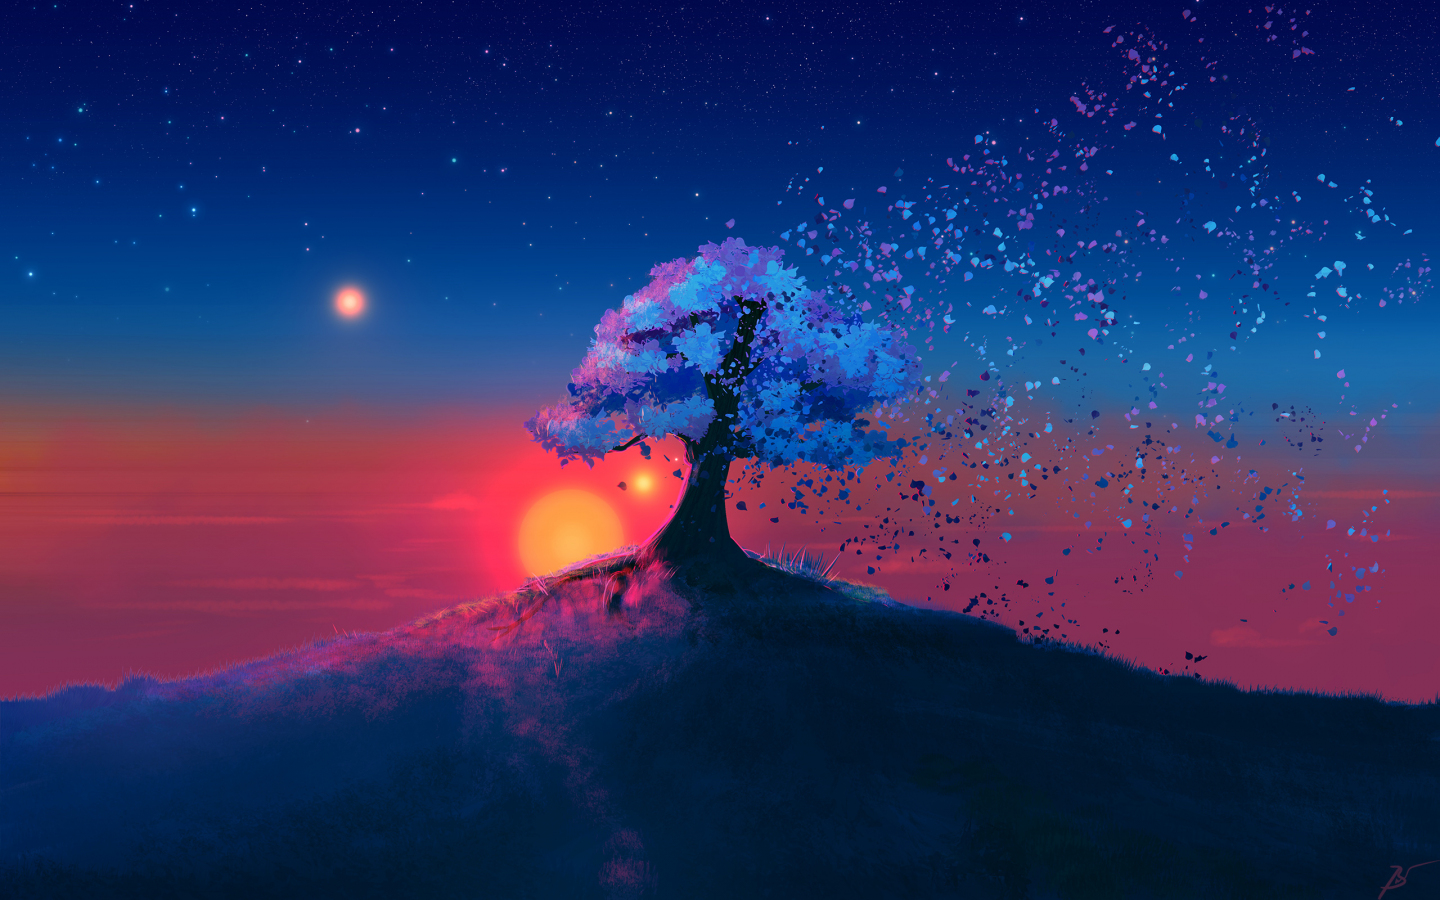 Download 1440x900 Wallpaper Dark Tree Sunset Landscape Art Widescreen 16 10 Widescreen 1440x900 Hd Image Background